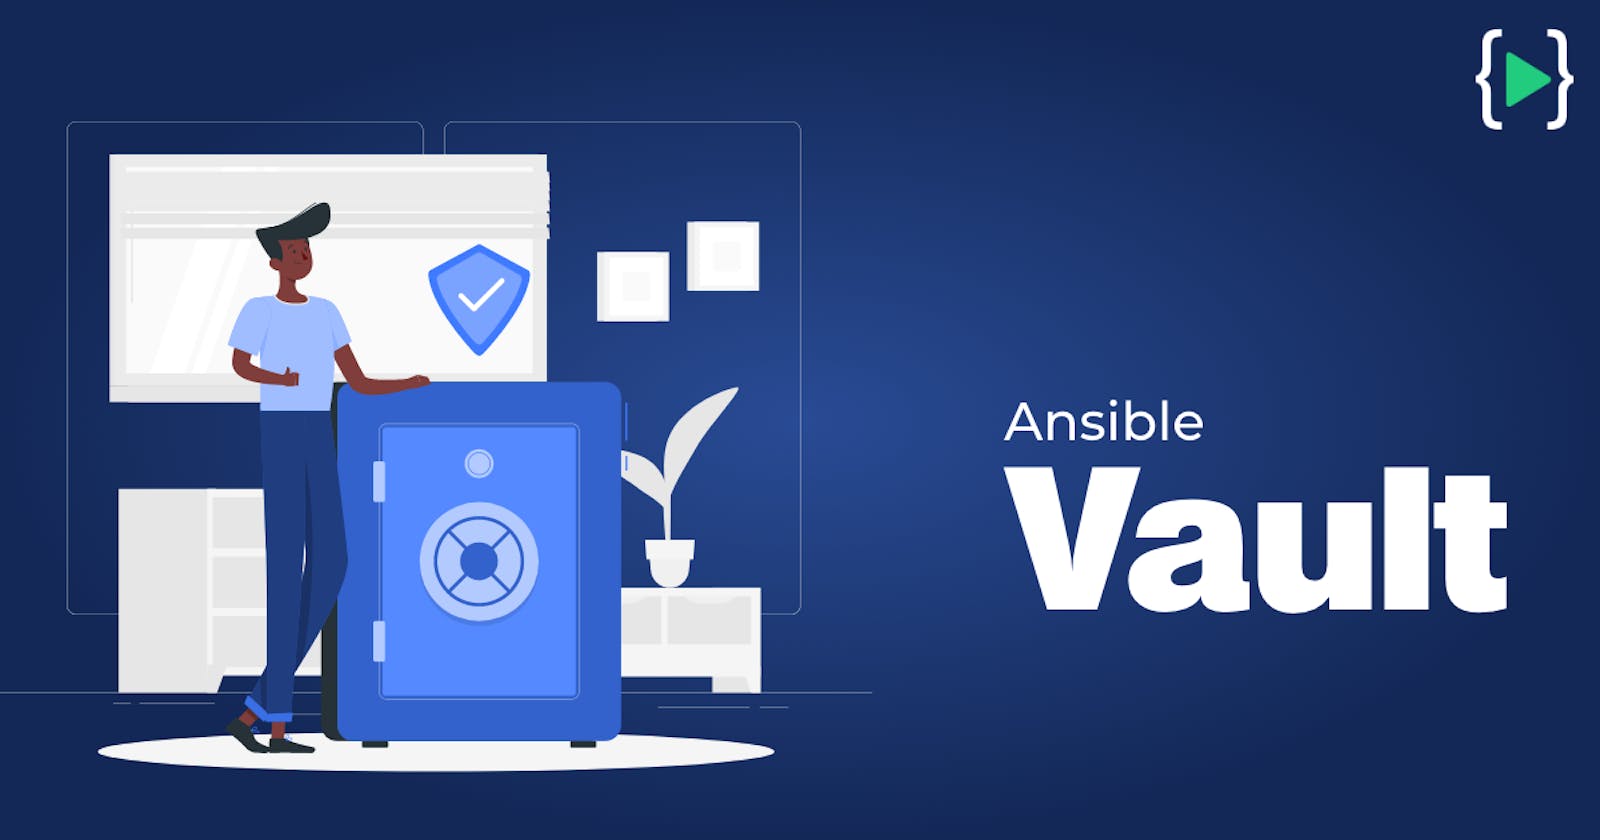 Ansible Vault - Keep Your Secrets Secret!